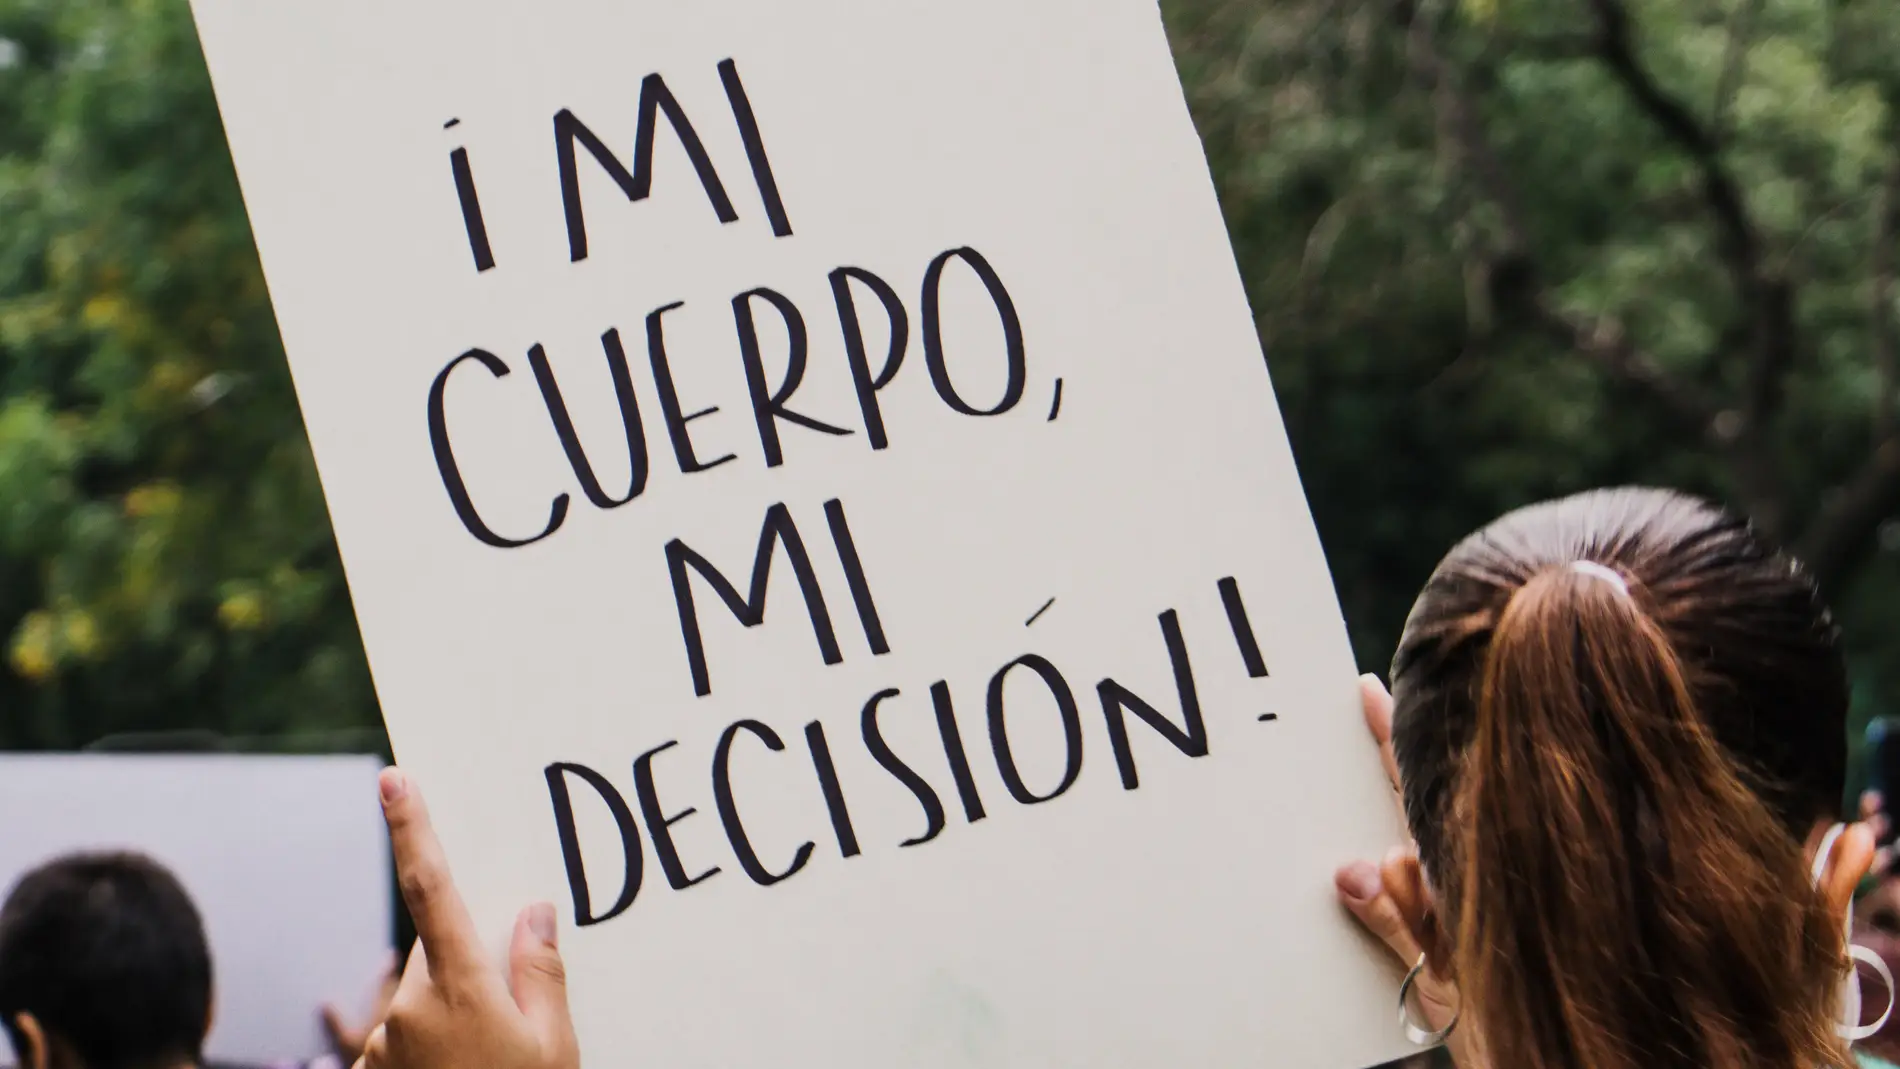 Una mujer muestra un cartel a favor del aborto en una manifestación/ Unsplash